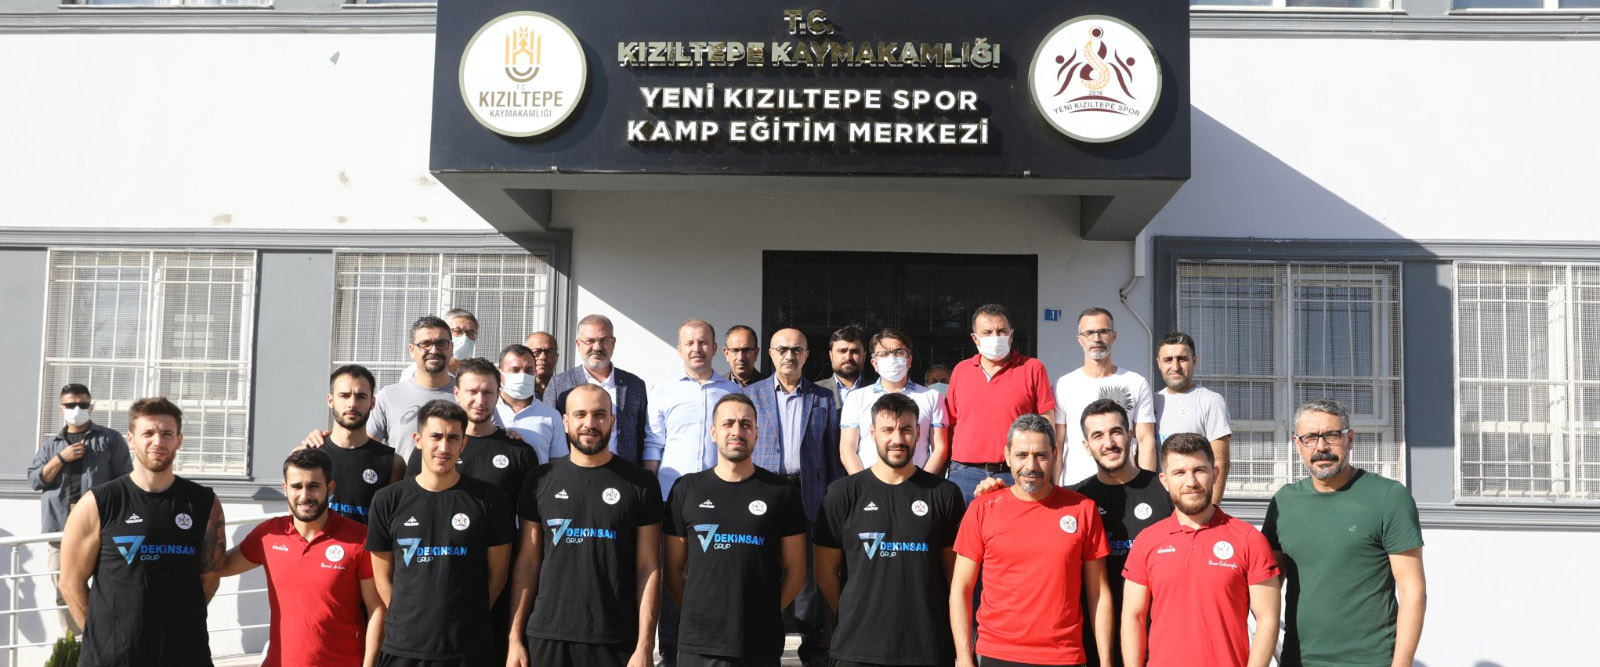 Vali Demirtaş’tan Yeni Kızıltepe Spor’a destek ziyareti